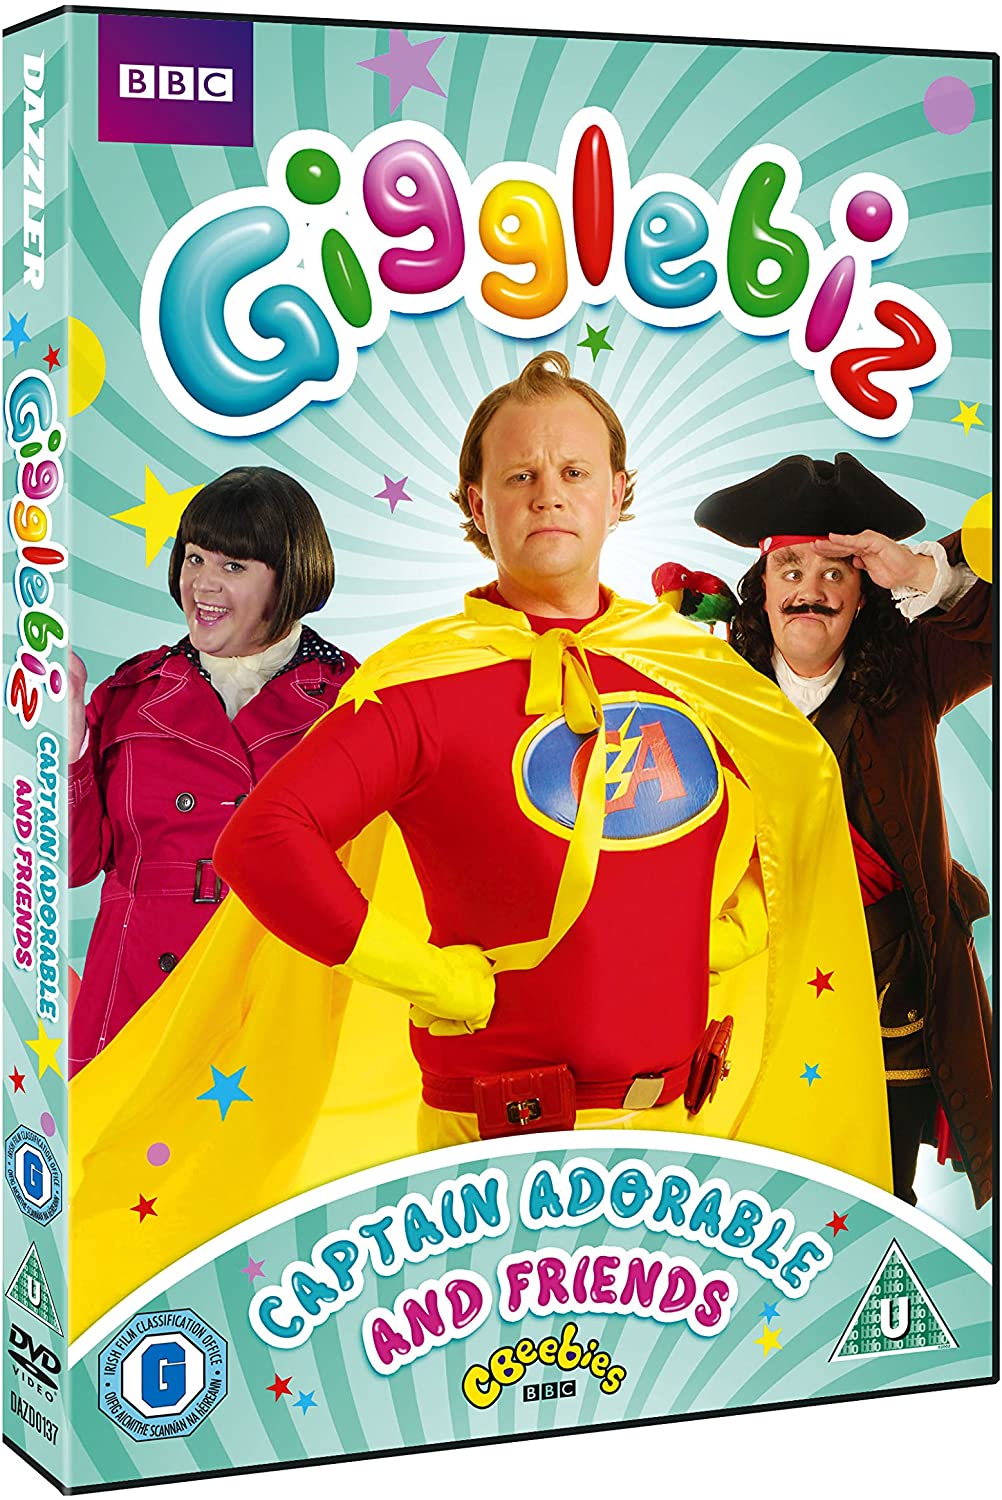 Gigglebiz: Captain Adorable & Friends (CBEEBIES) - Comedy [DVD]